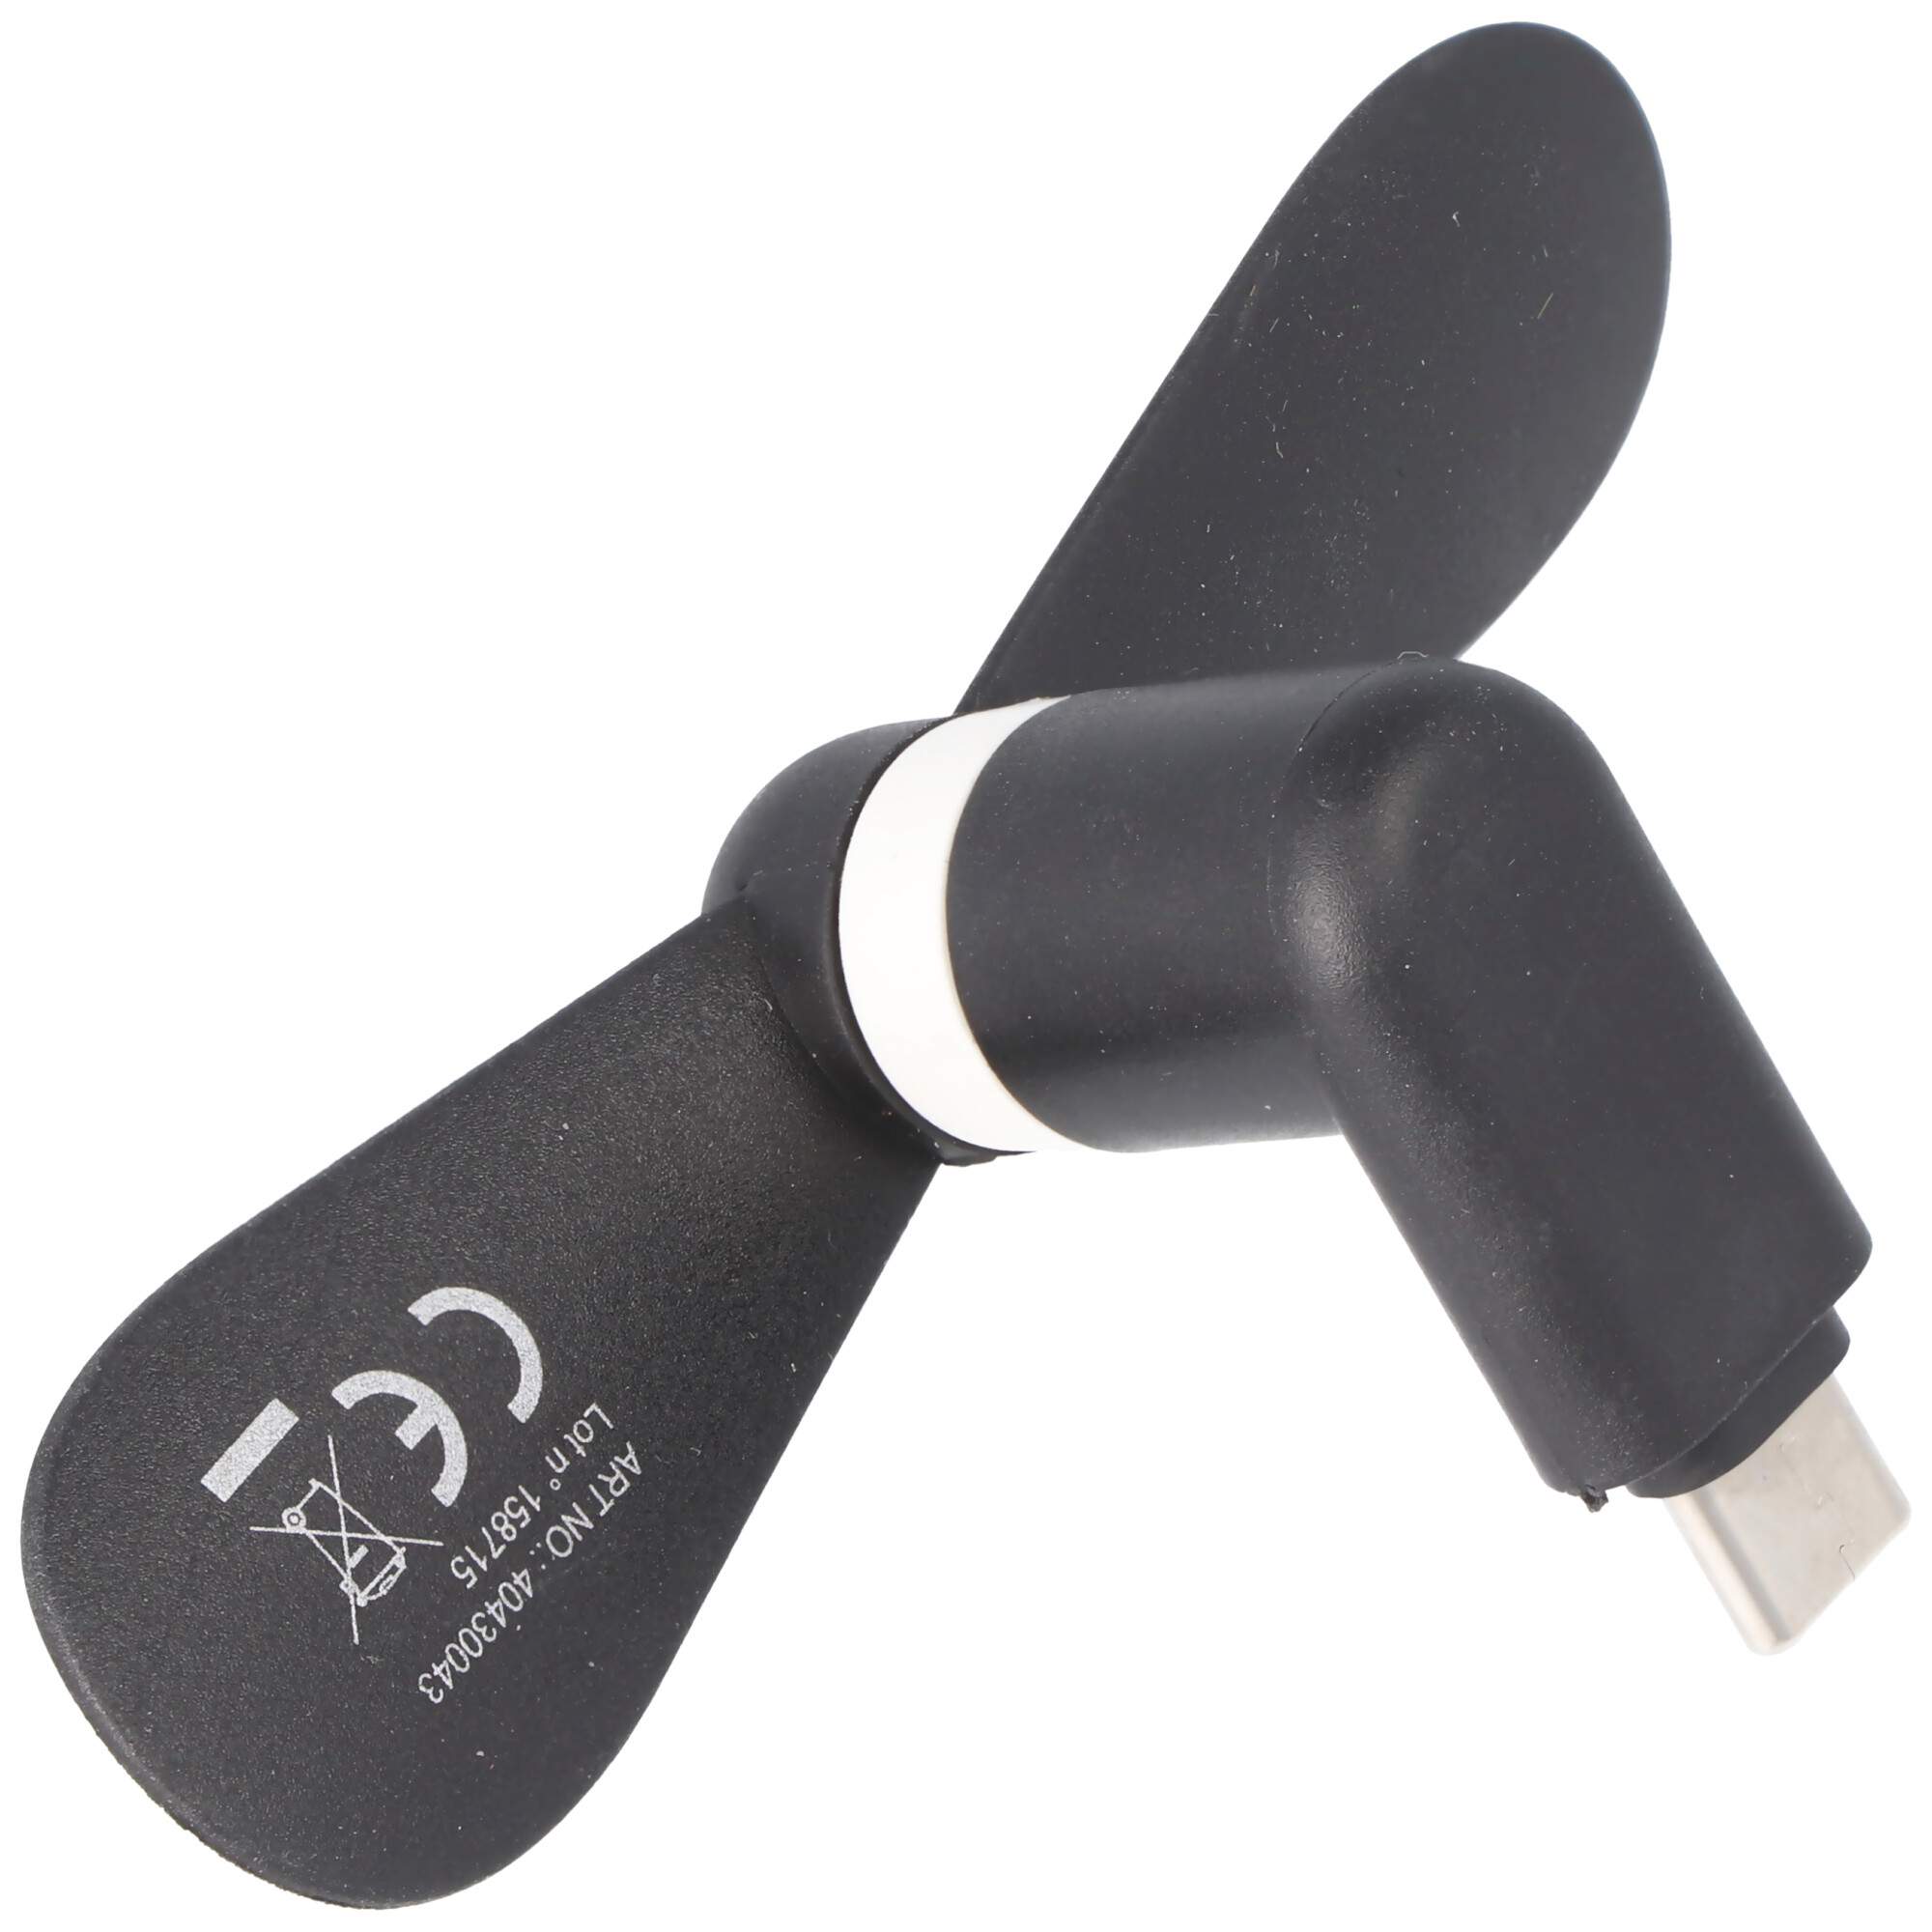 Mini-Ventilator für Smartphones mit USB-C Anschluss, Typ-C-Anschluss, Ventilator für Smartphone, farblich sortiert